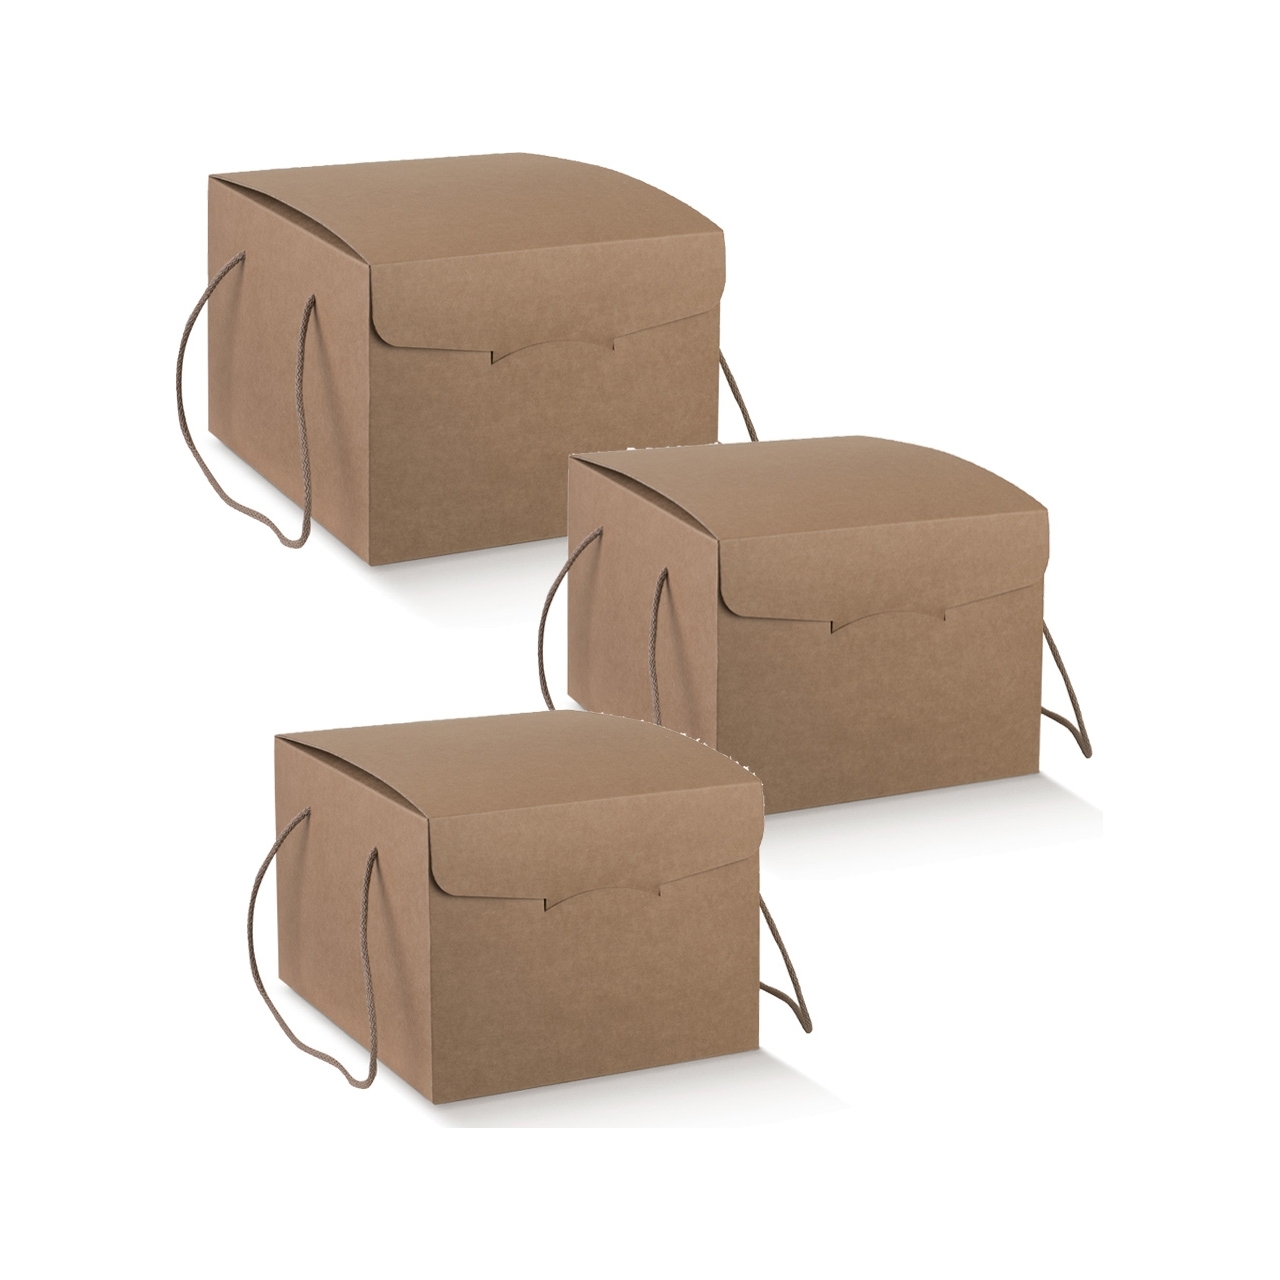 Box contenitore con cordini colore avana per servizi delivery o per regalo Natale Pasqua vendita Ingrosso online